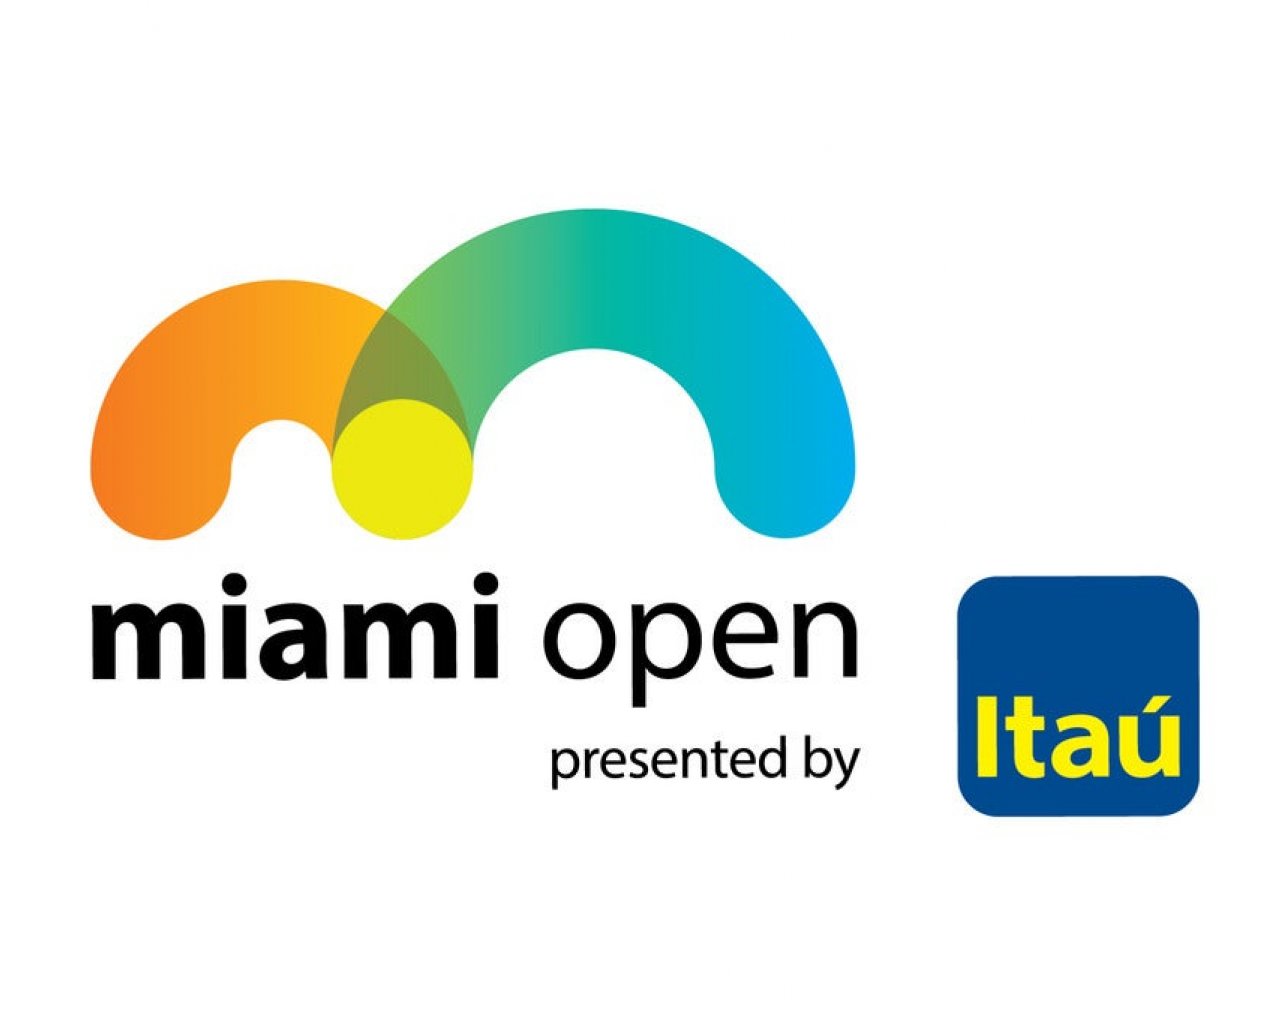 Miami Open Tennis